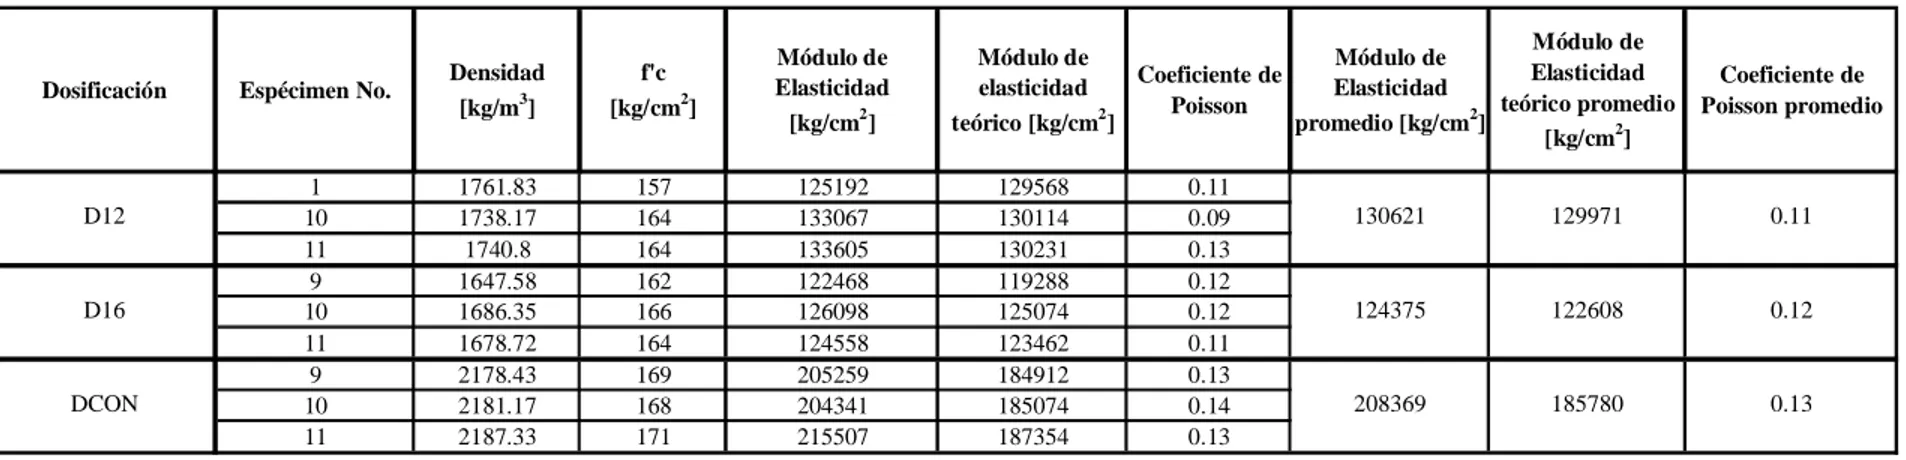 Tabla 35. Resultados de la prueba del módulo de elasticidad y del coeficiente de Poisson de las dosificaciones D12, D16 y DCON.